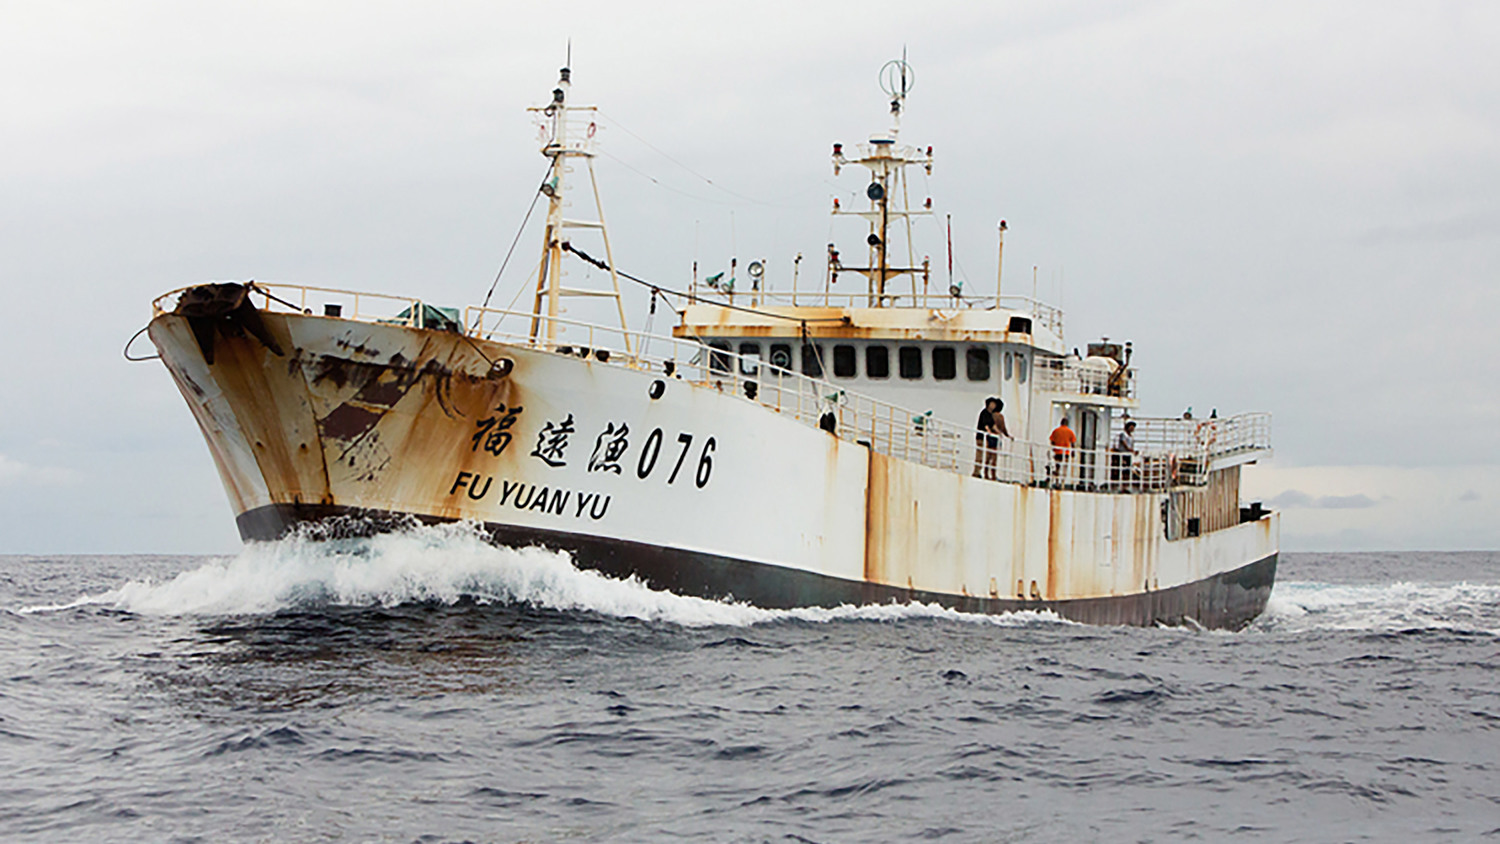 سفن Fu Yuan Yu تنهب الثروة السمكية الموريتانية بصفة غير (...)